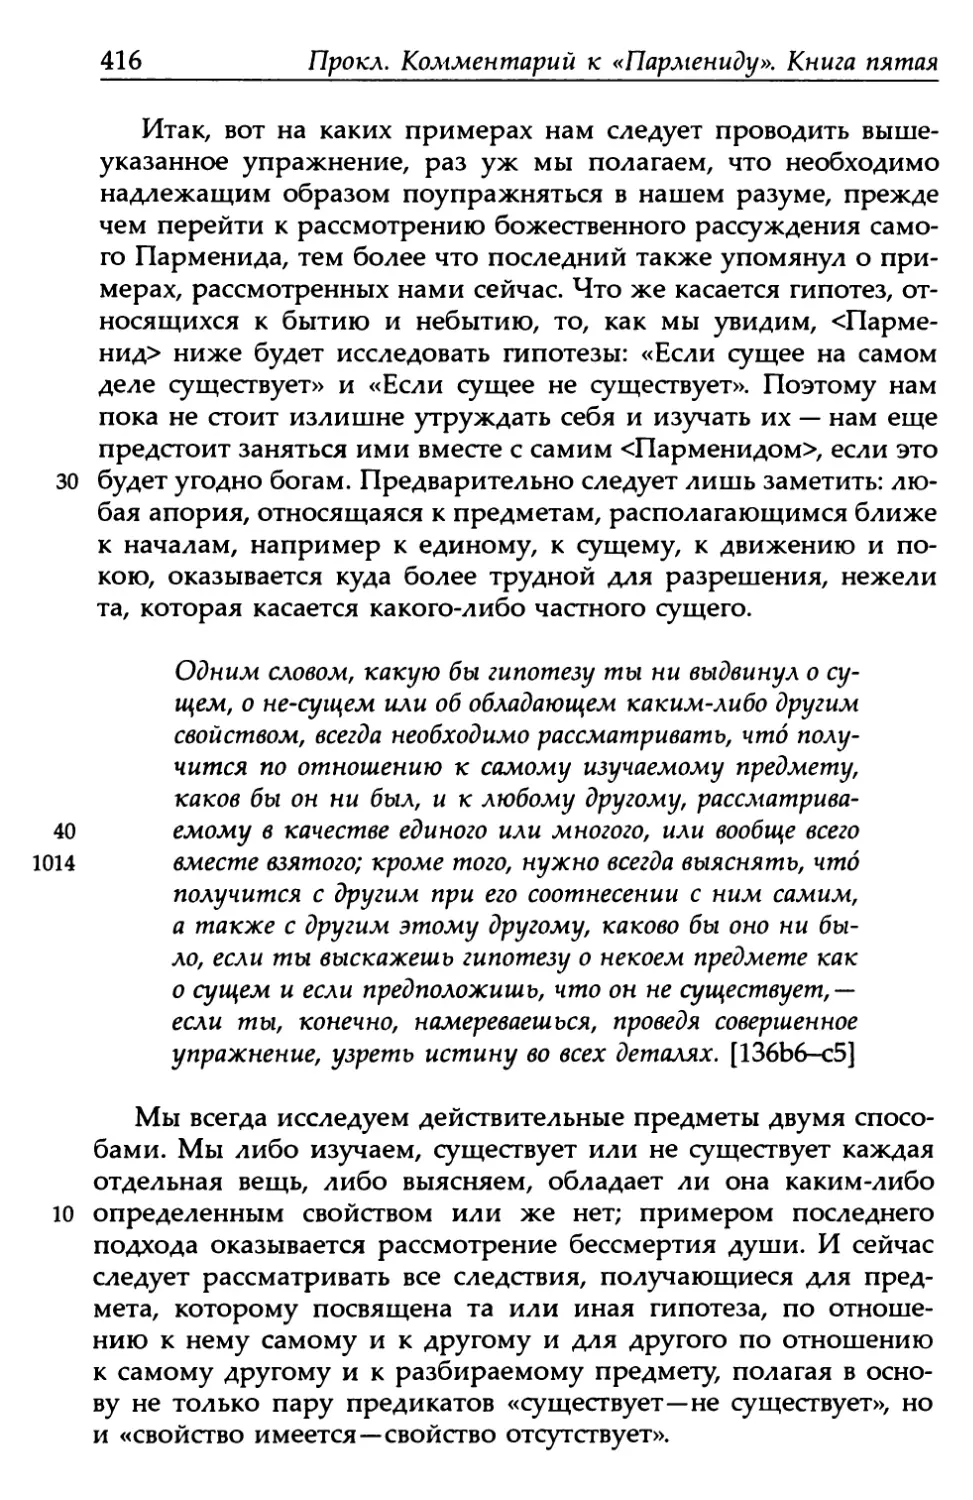 «Парменид», 136b6-c5